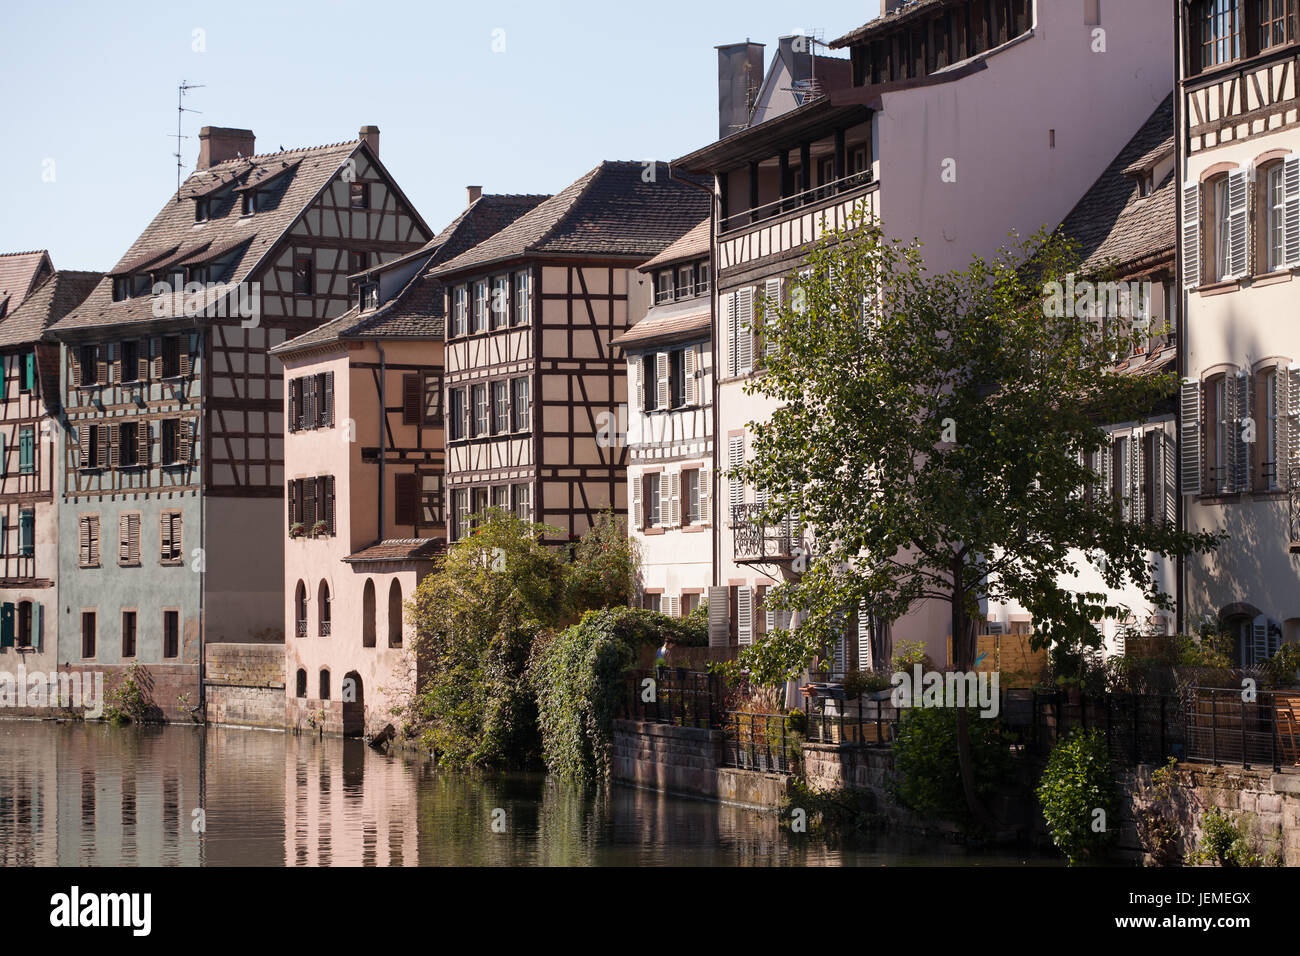 Straßburg, Frankreich; Stadtszene - alte Häuser an den Grachten am sonnigen Tag; Stockfoto